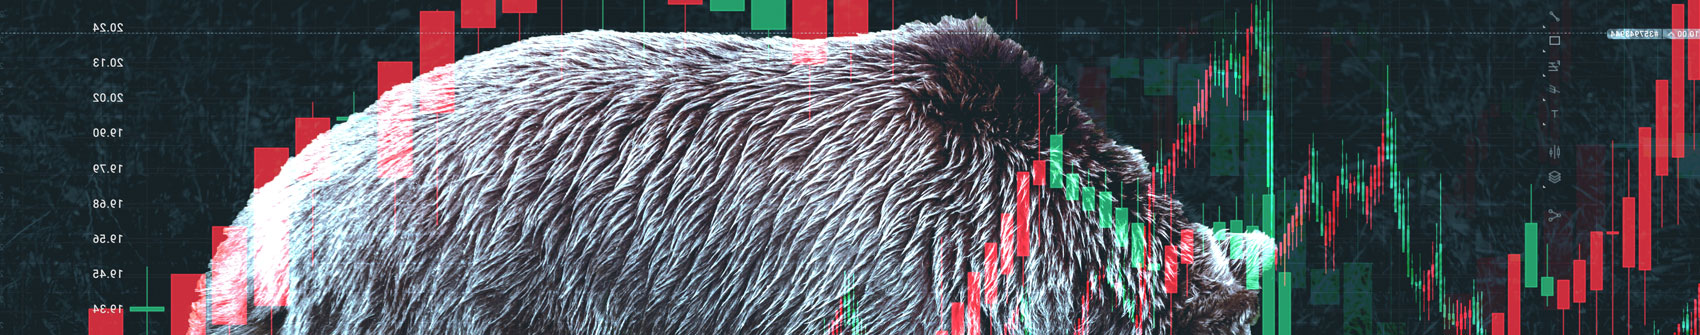 A Bear Market Compass: How To Spot An Equity Market Bottom